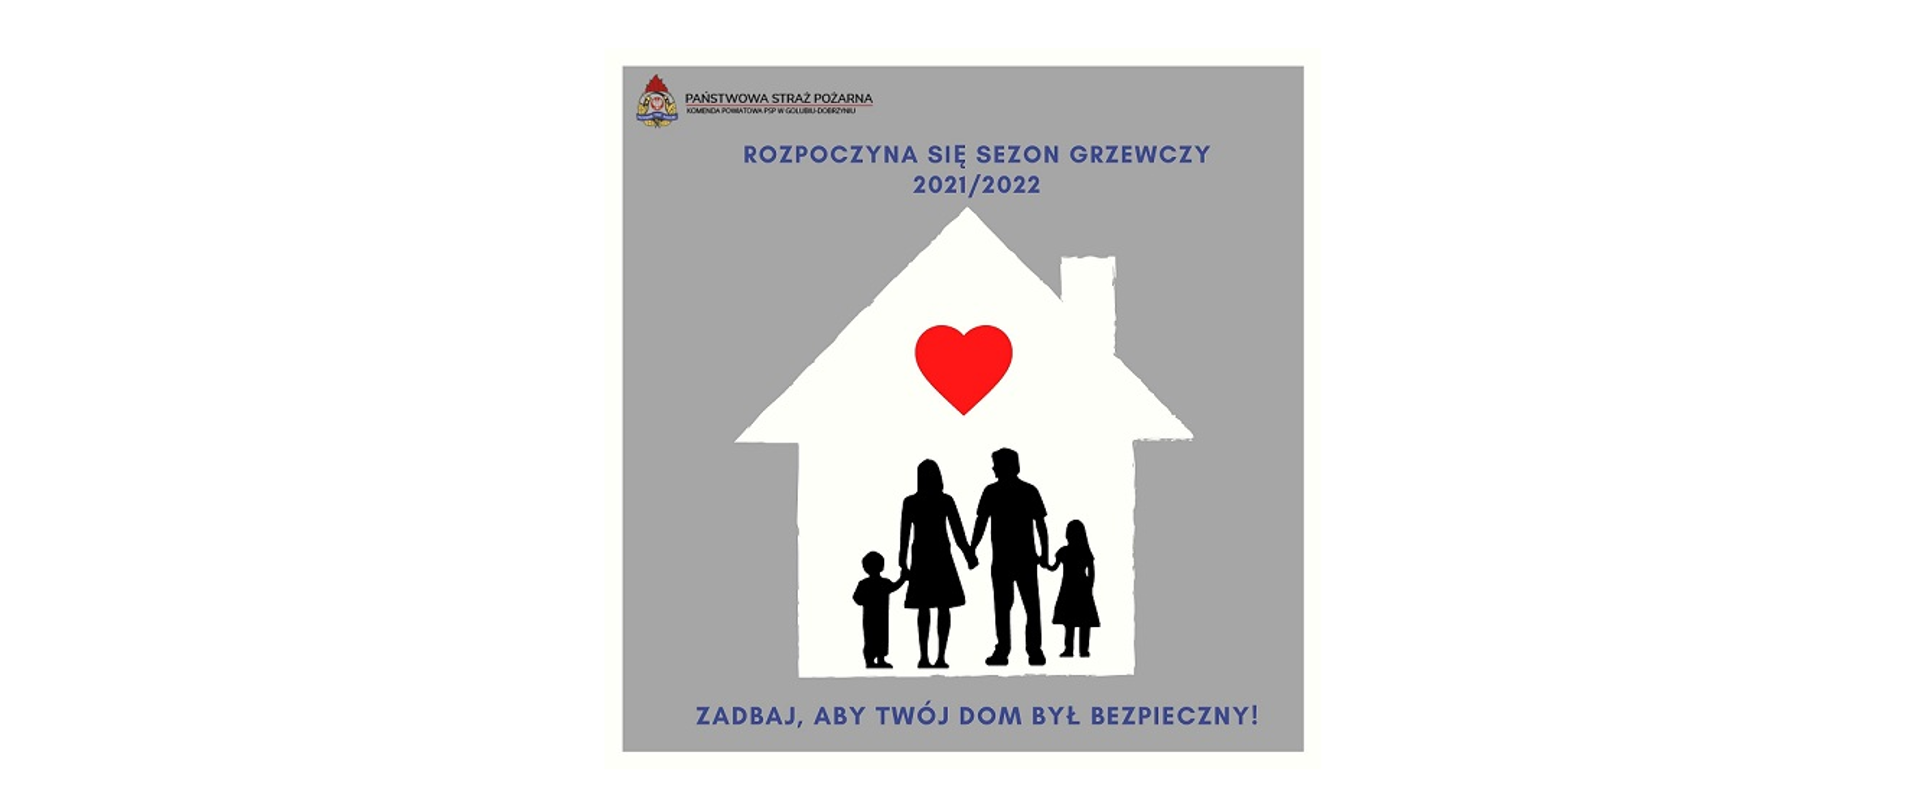 Na plakacie widać ikonę domu w jego wnętrzu jest czteroosobowa rodzina w kolorze czarnym a nad nią czerwone serce. 